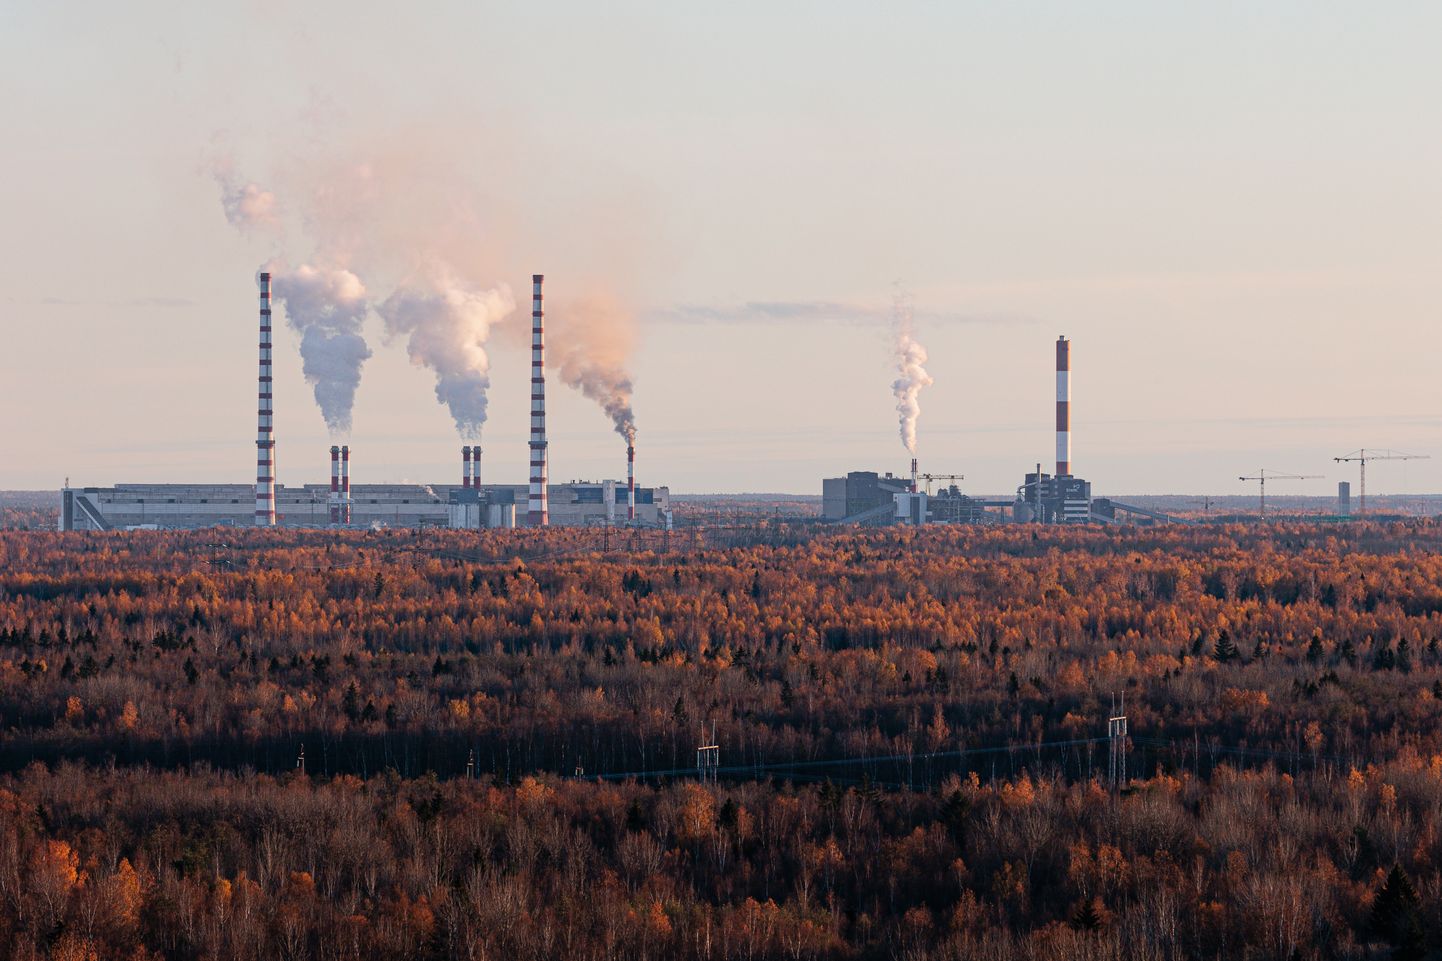 Сланцевые электростанции и завод масел "Eesti Energia" рядом с Нарвой.